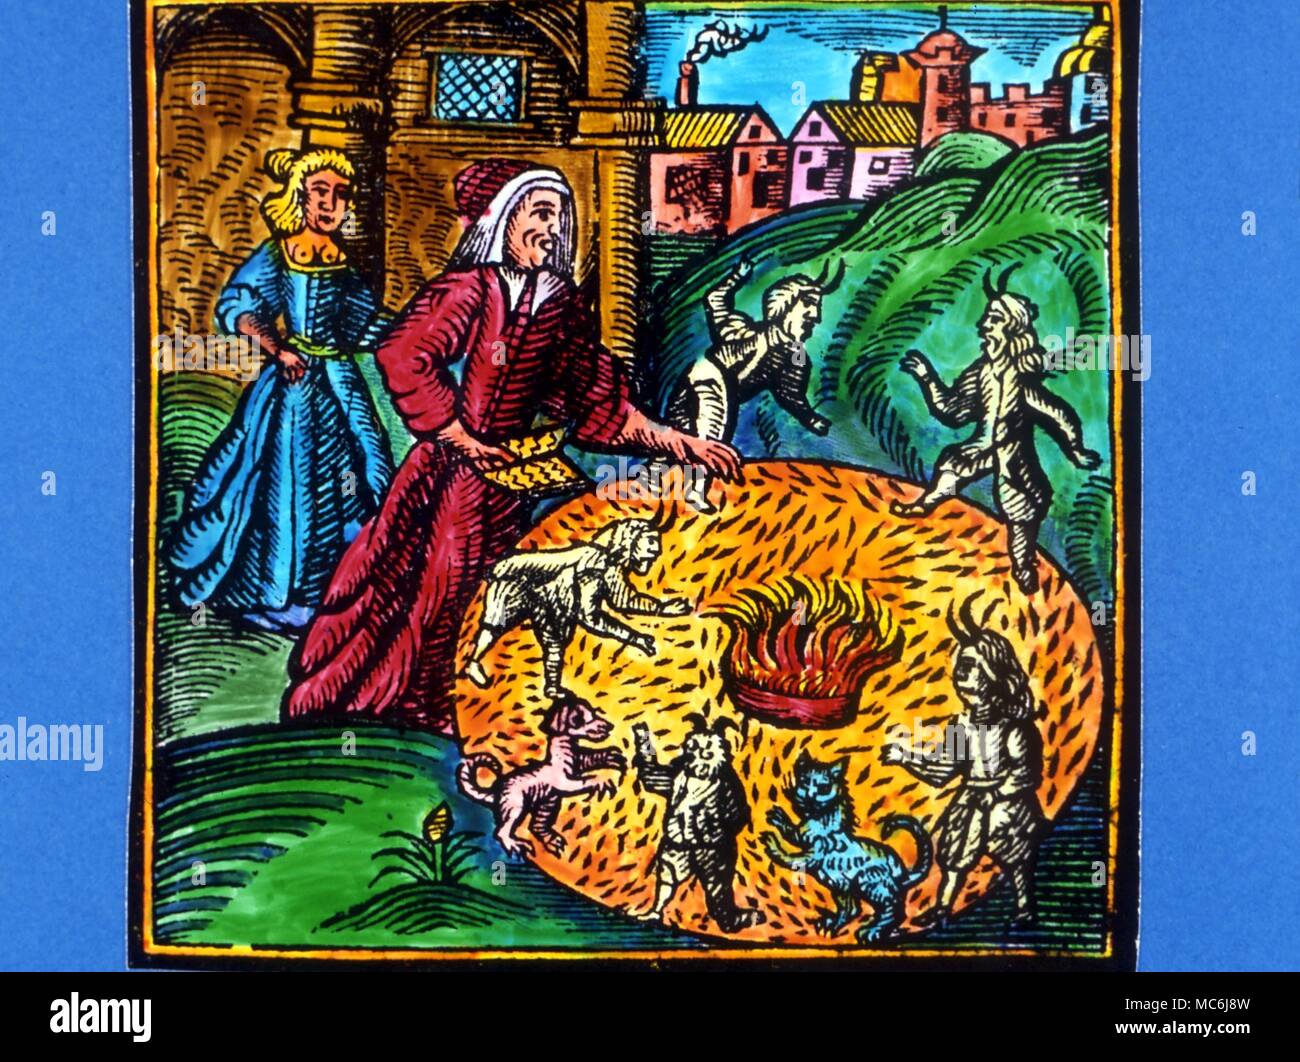 DIVINATION - ANNE BODENHAM. Die Hexe, Anne Bodenham, divining die Zukunft mit Hilfe einer Katze, Hund und fünf Dämonen, von nathanial Crouich's "Reich der Finsternis", 1688 Stockfoto